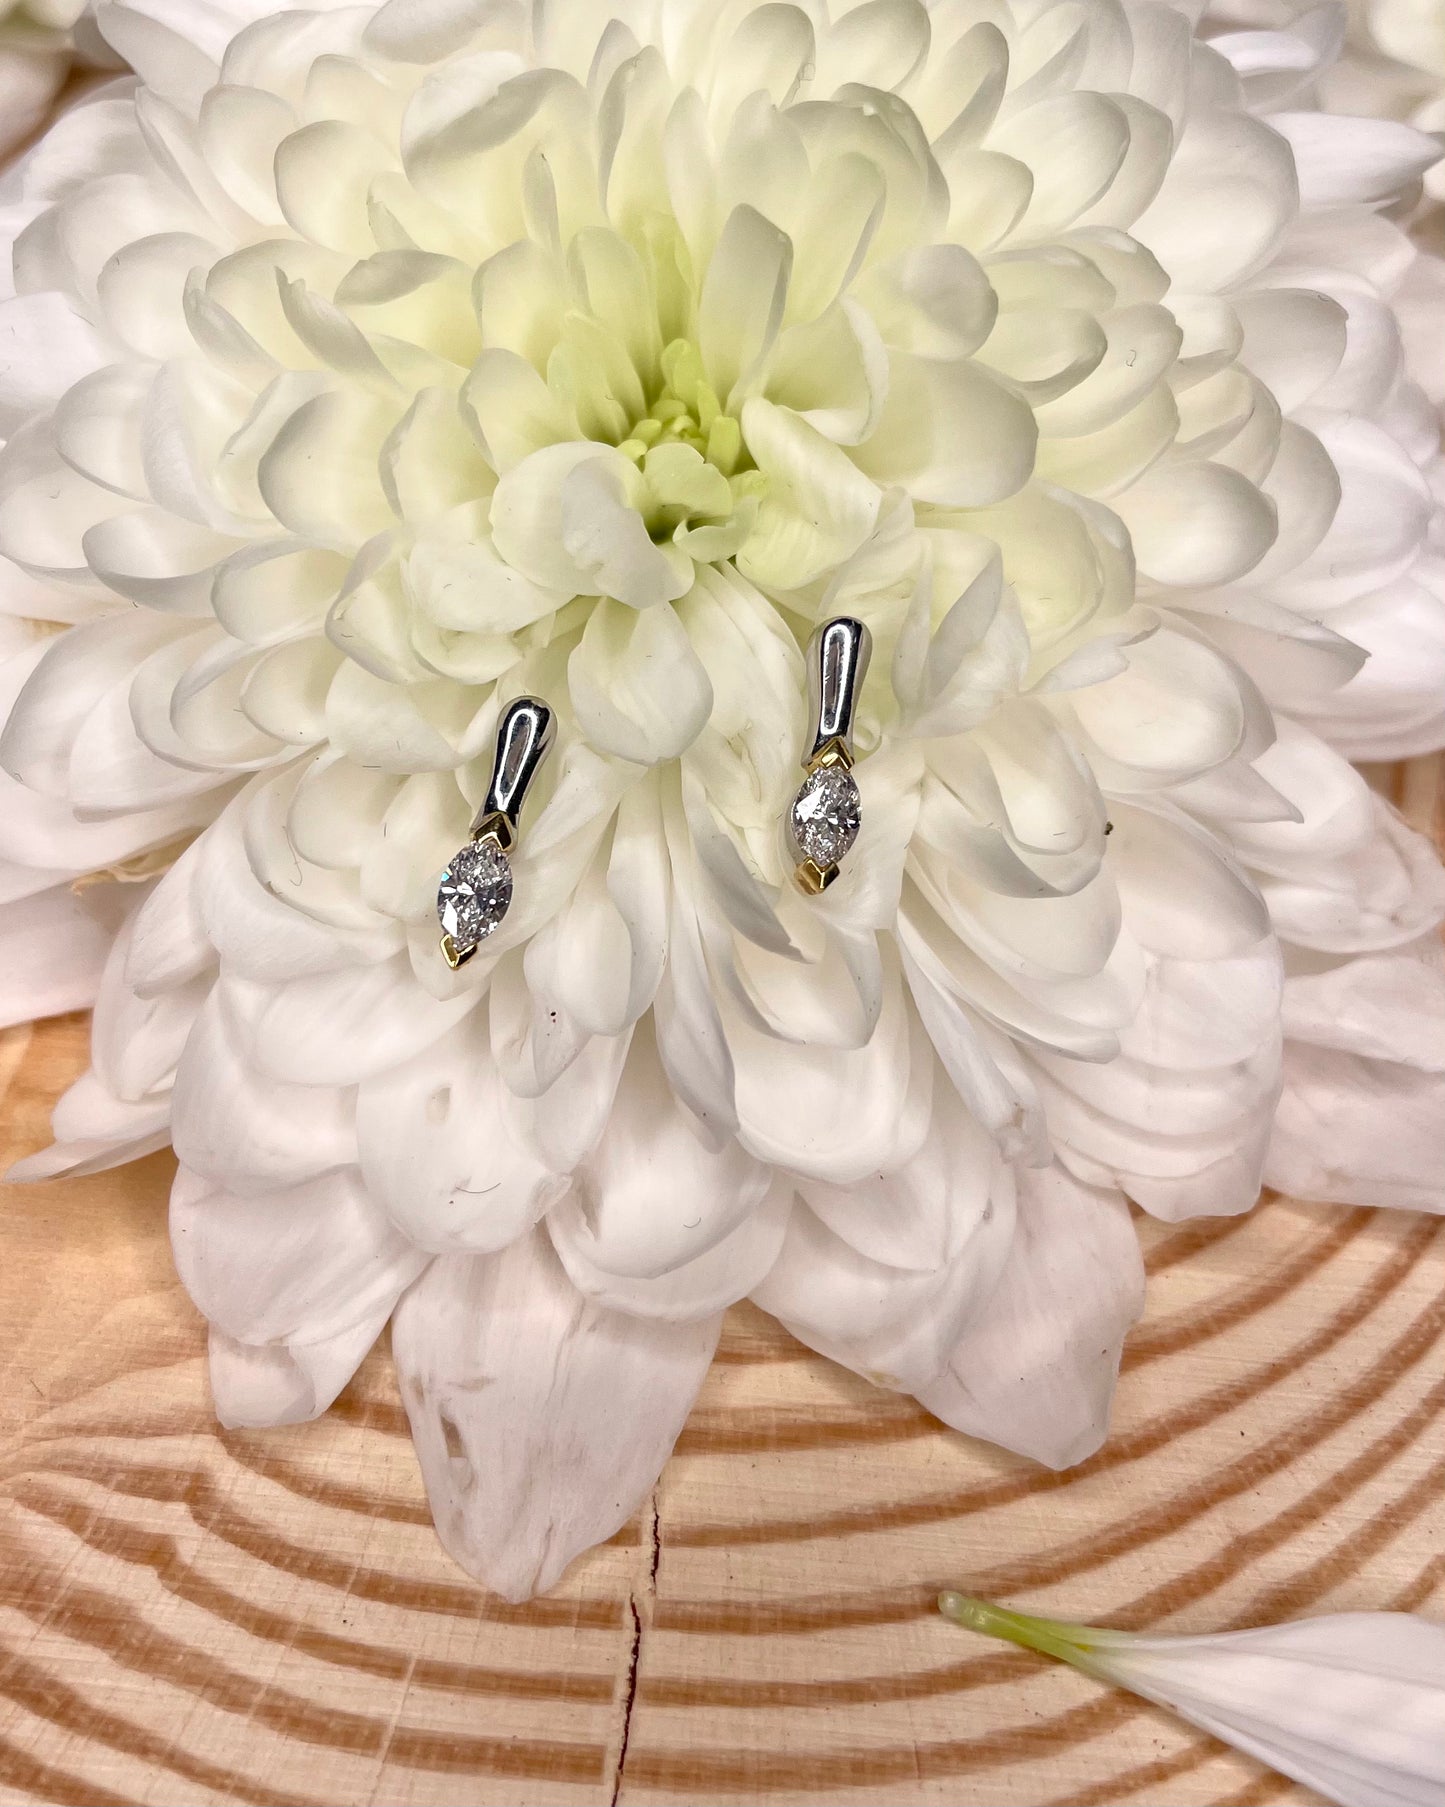 Marquise Diamond Stud Earrings